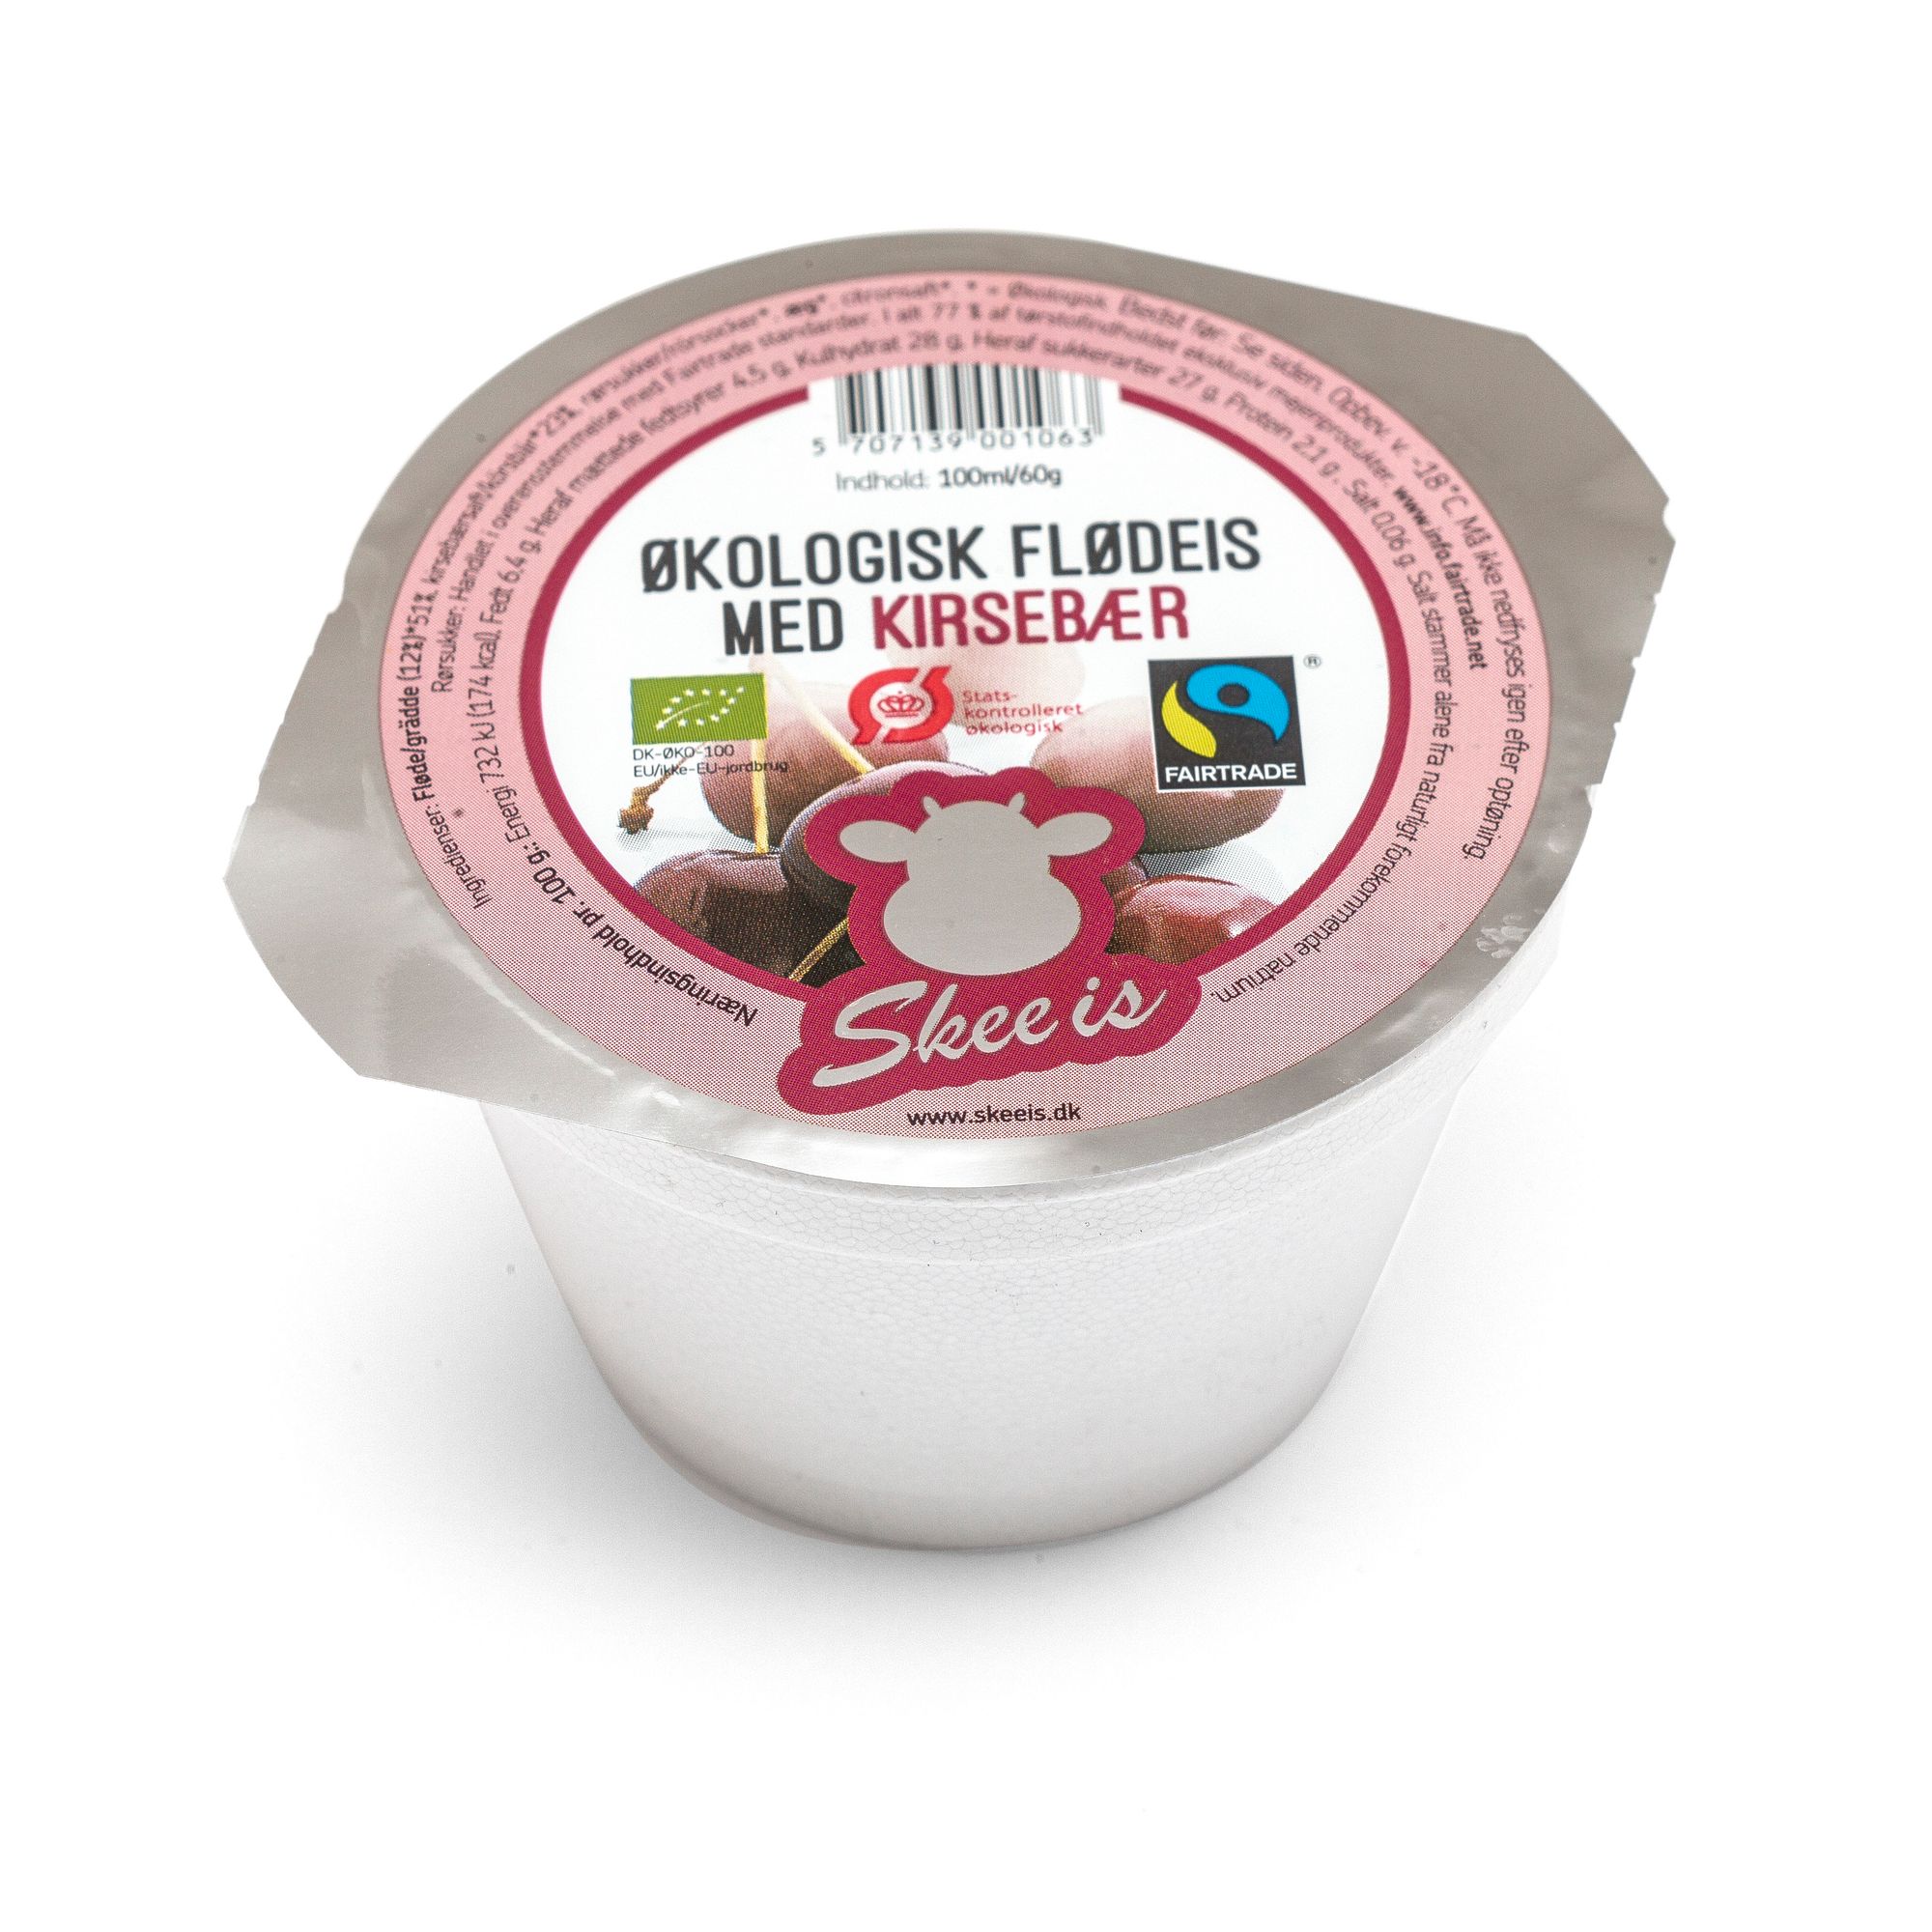 Økologisk Flødeis med Kirsebær, fairtrade, 100 ml